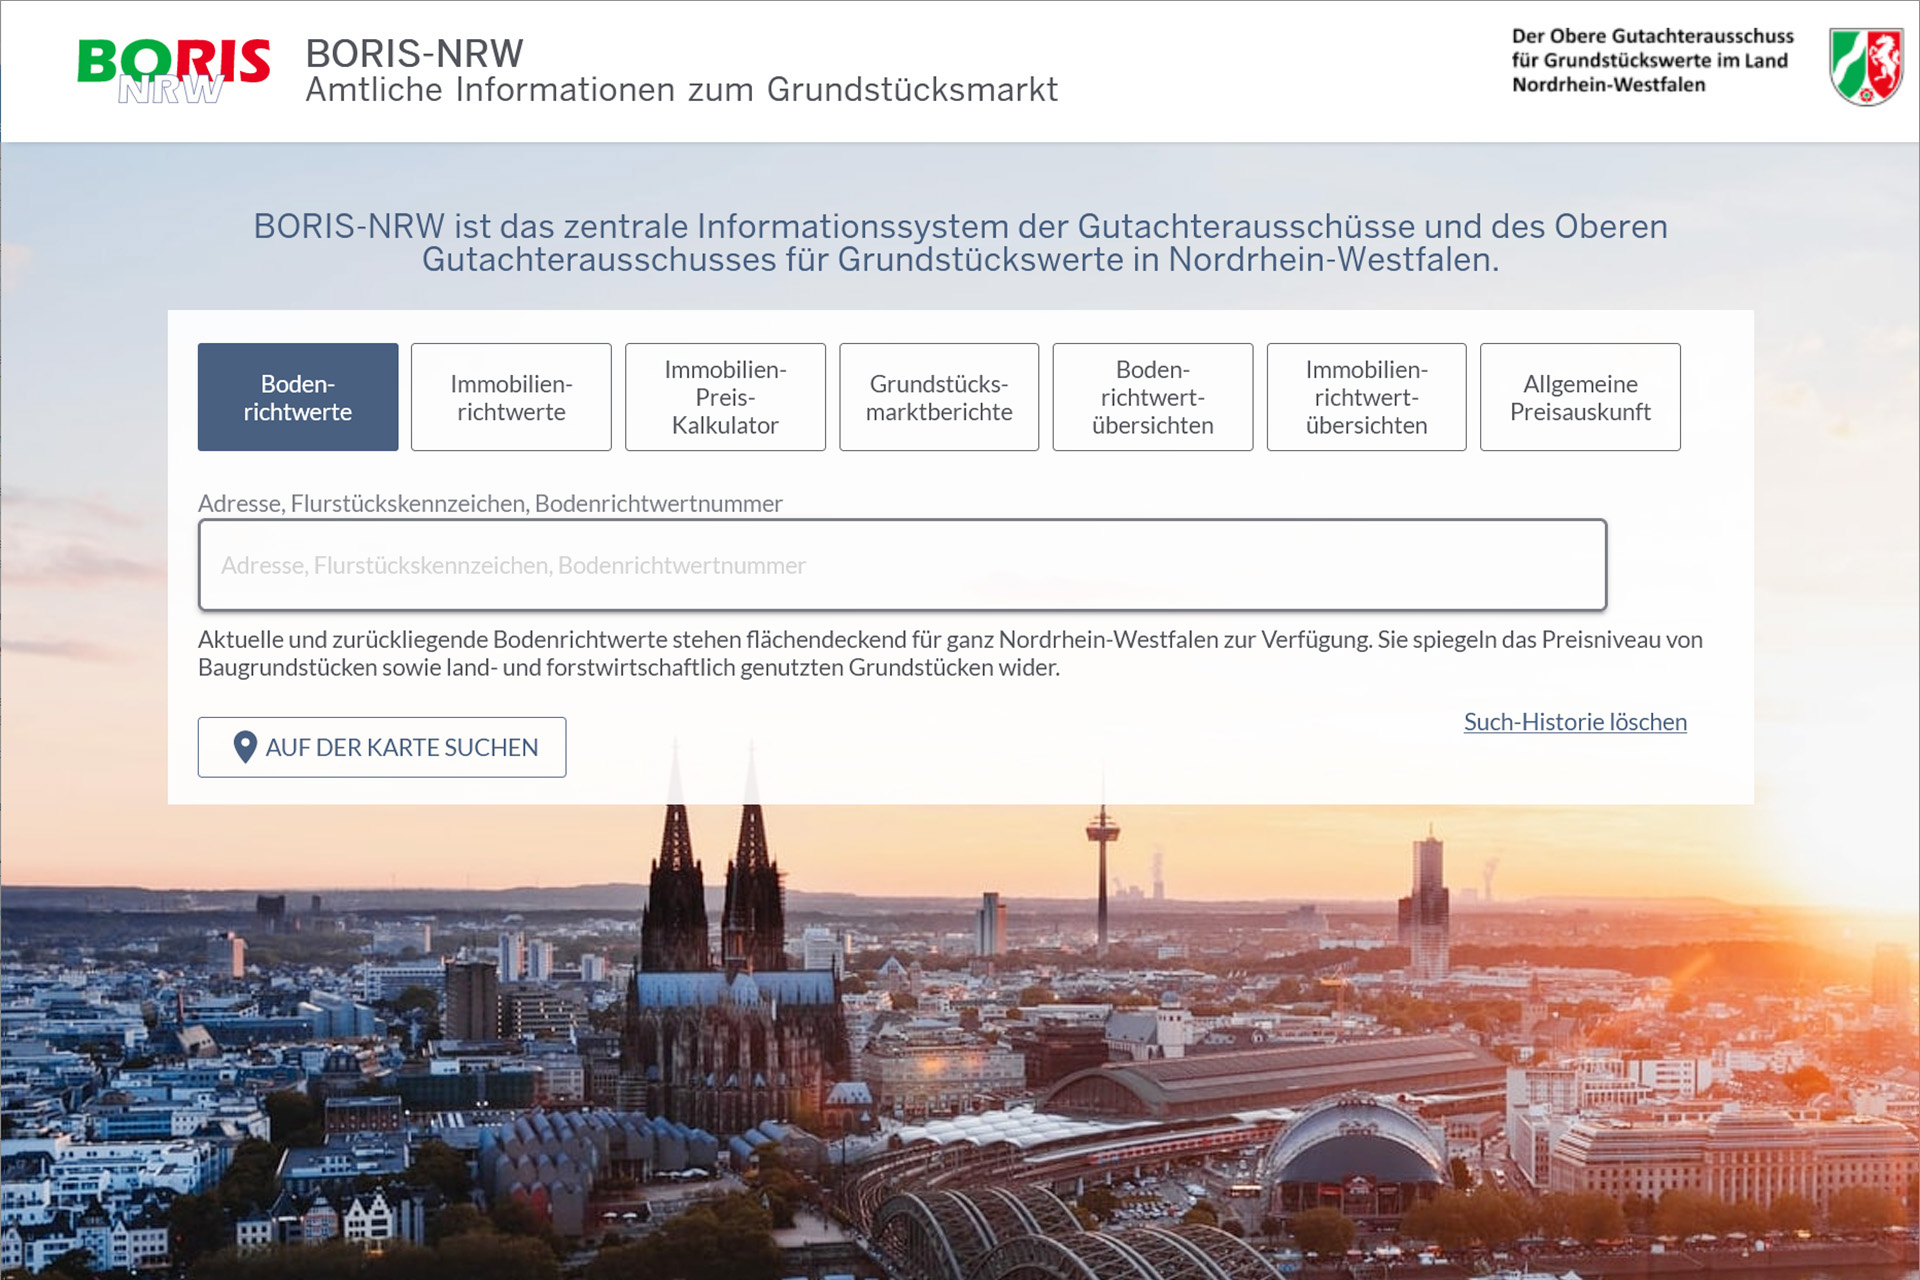 Startseite zu BORIS-NRW – Amtliche Informationen zum Grundstücksmarkt in Nordrhein-Westfalen